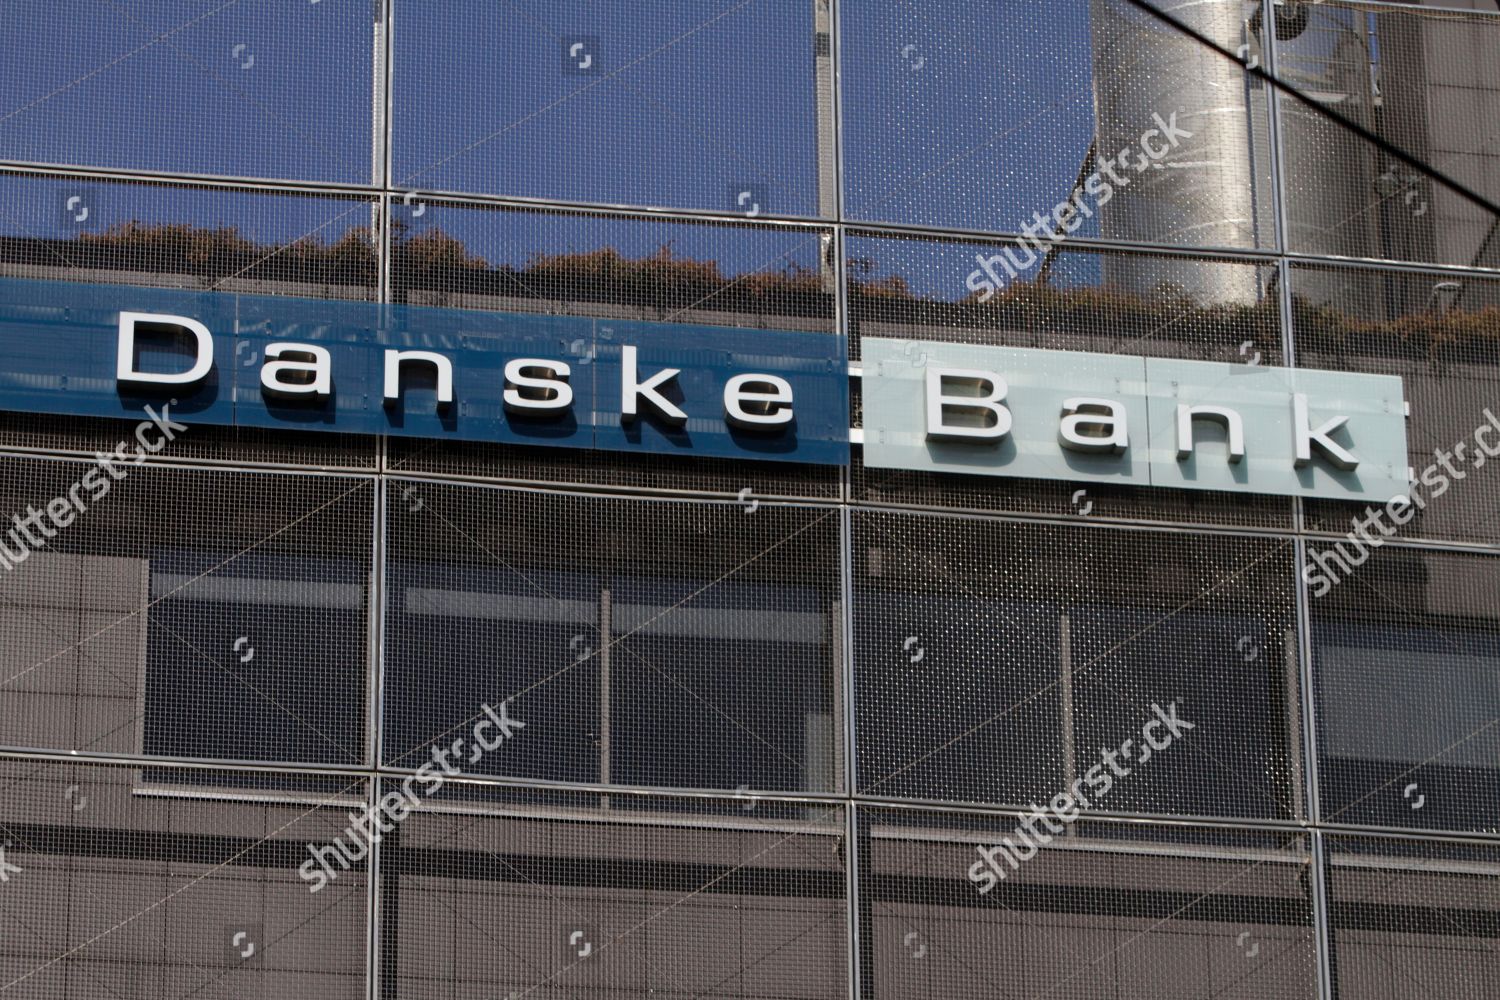 danske bank stock